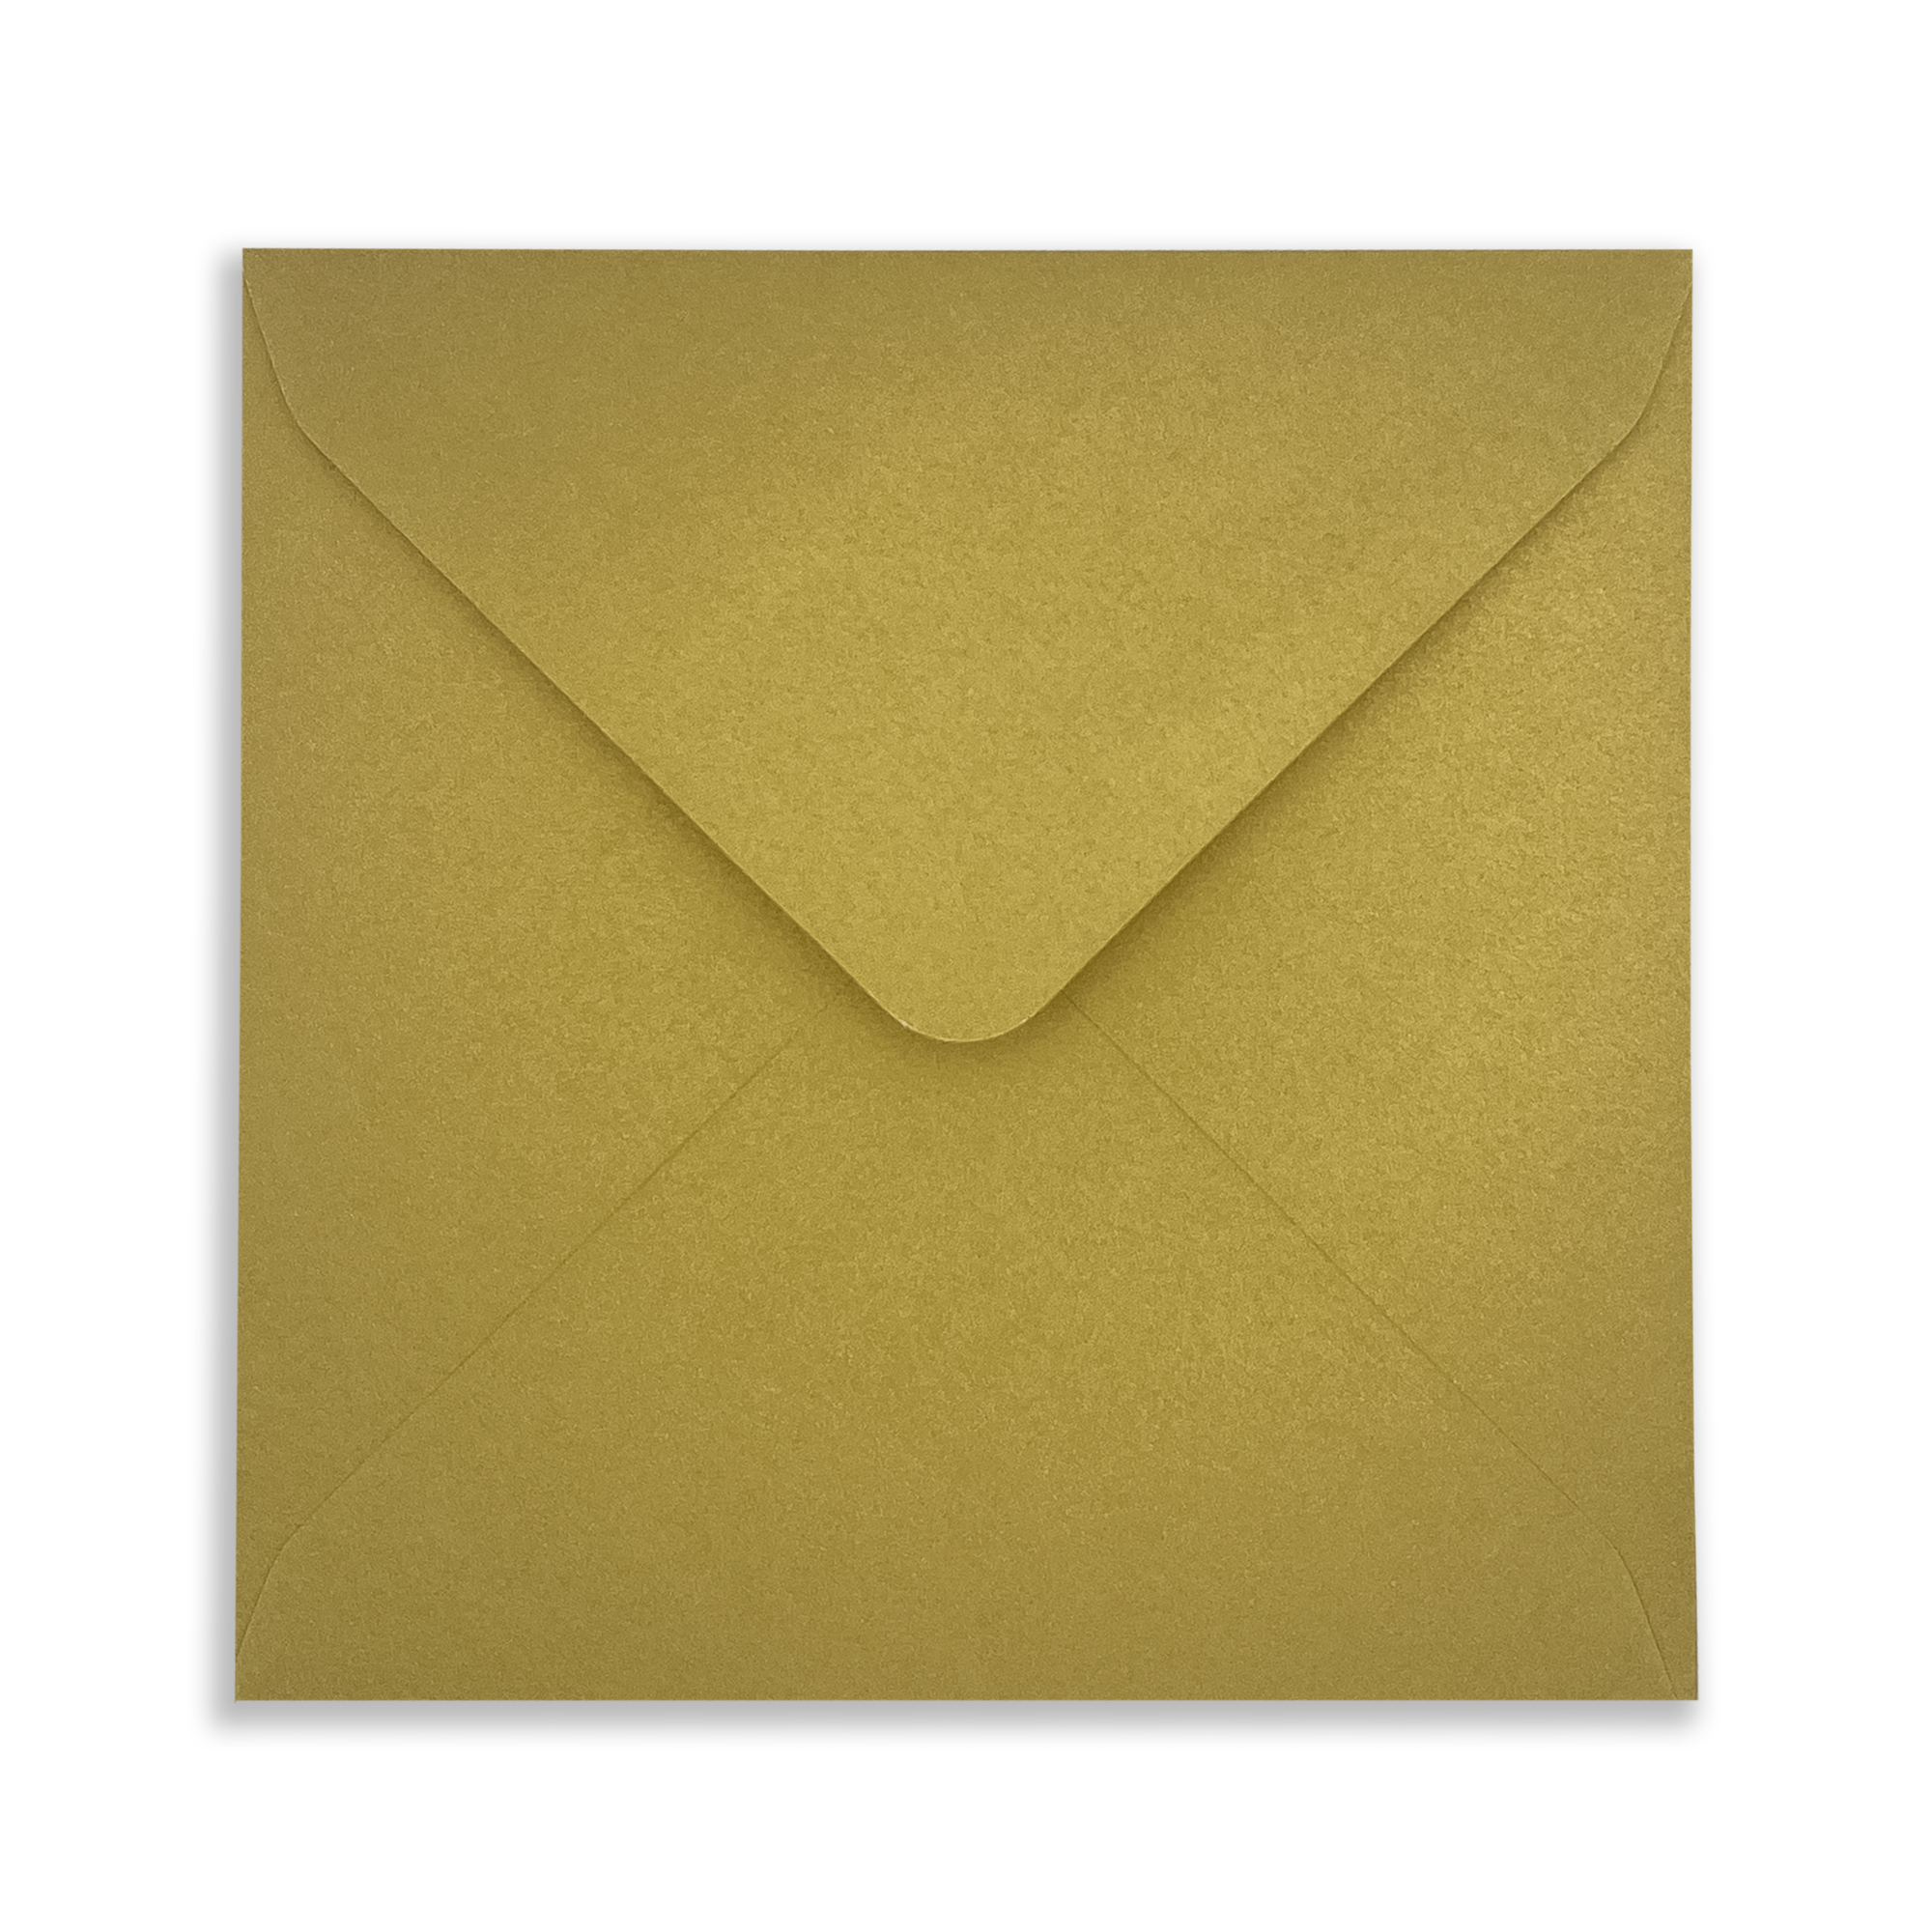 130mm_Square_Soft_Gold_Envelope_Front